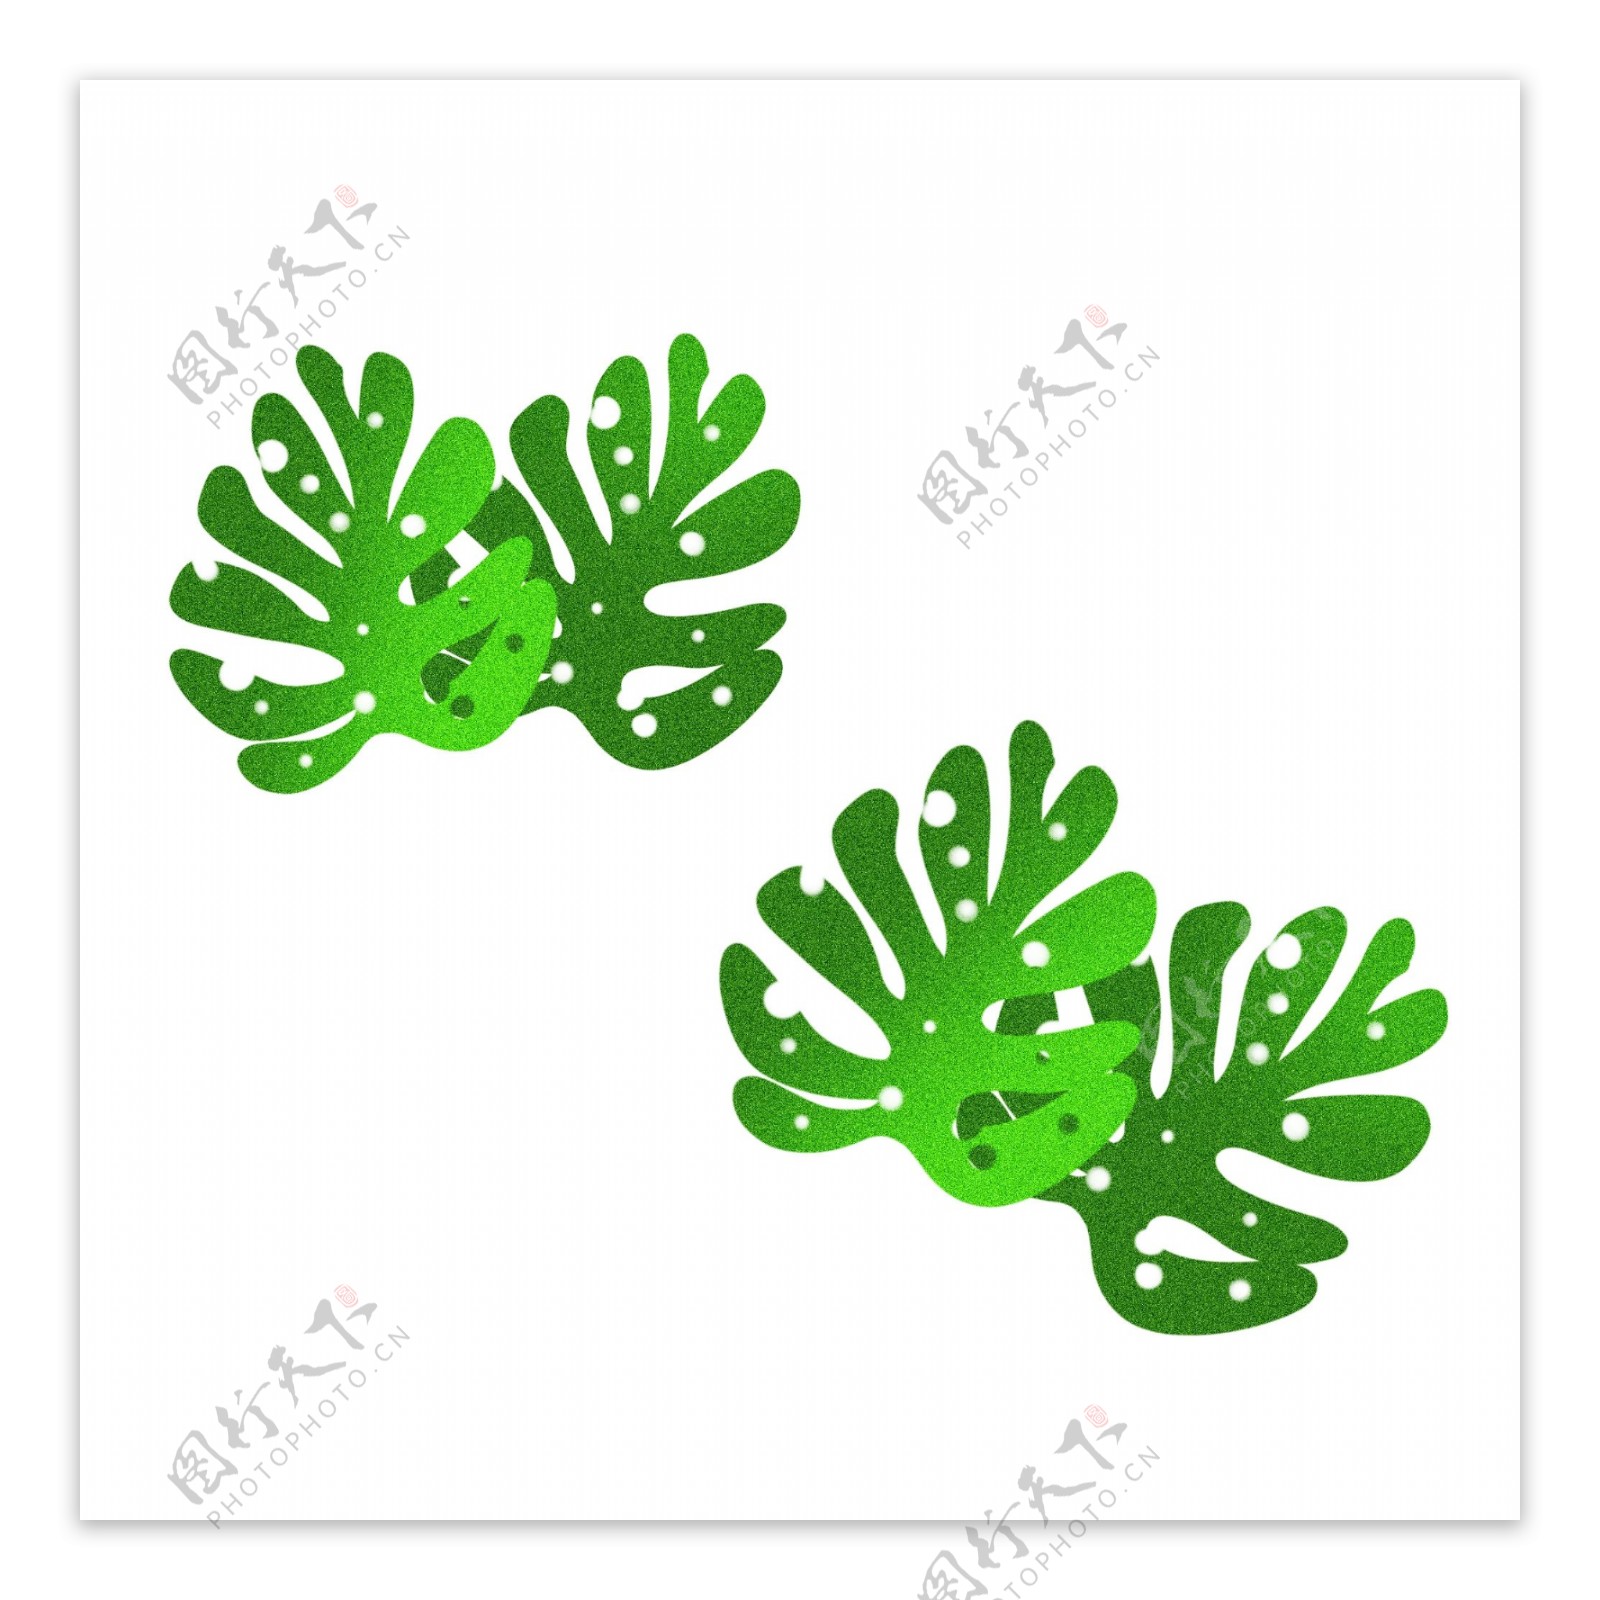 绿色植物树叶插画